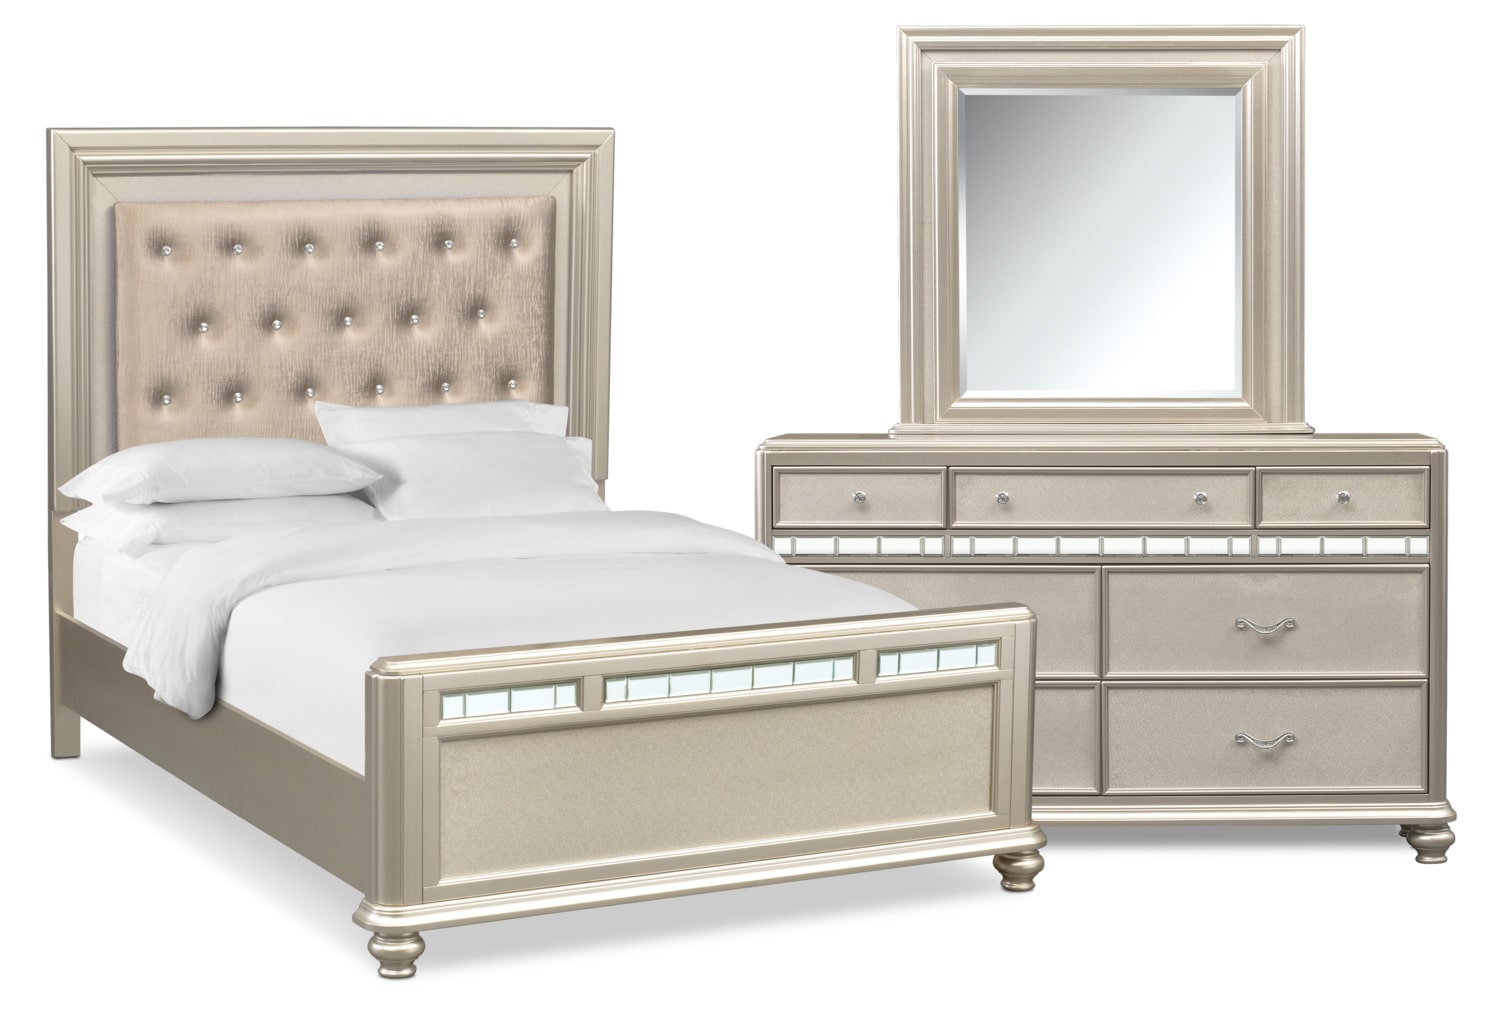 Sabrina 5 Piece Queen Bedroom Set With Dresser And Mirror